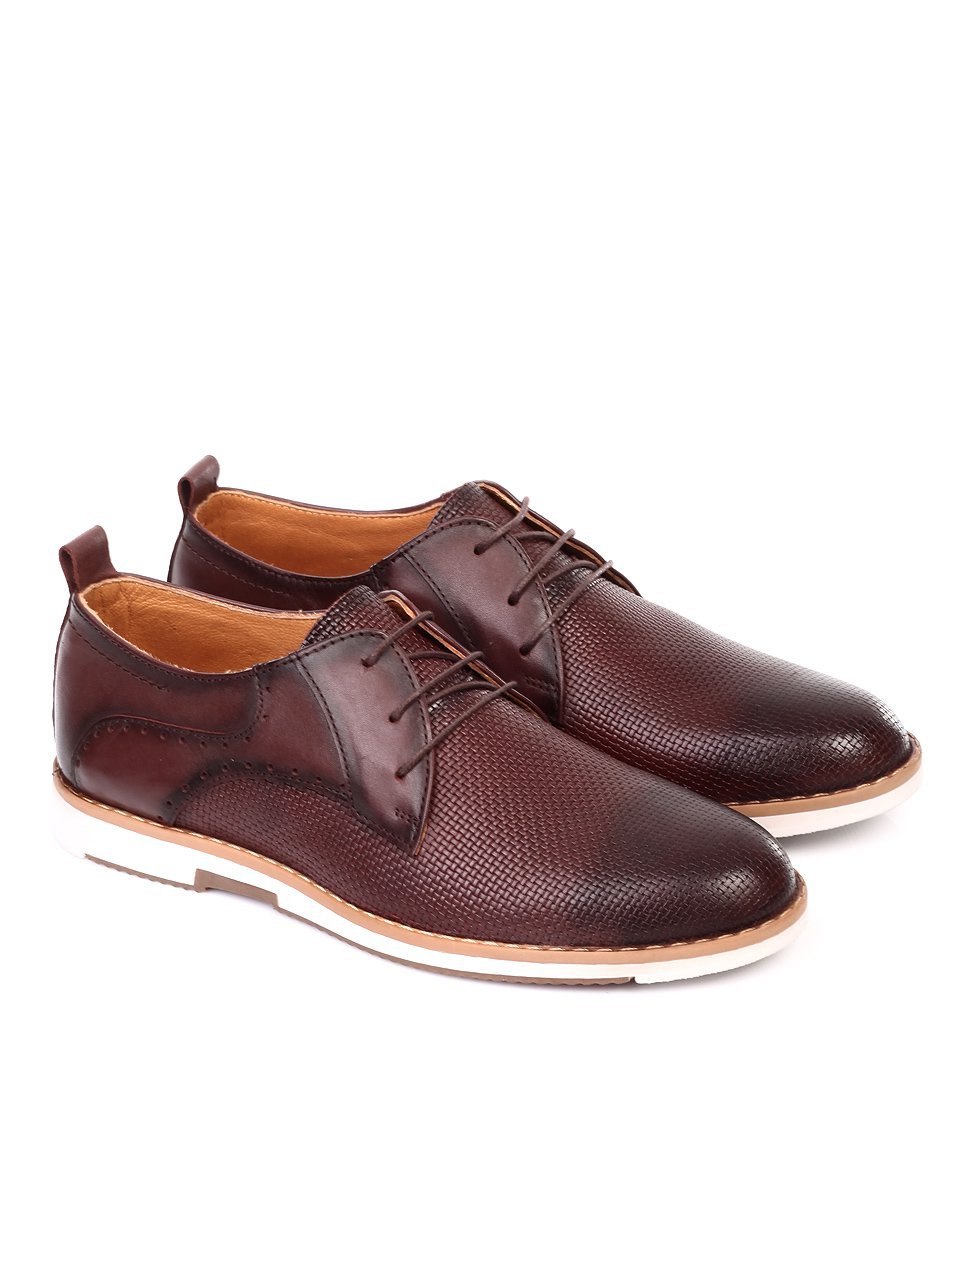 Ежедневни мъжки обувки от естествена кожа в кафяво 7AT-18557 brown 